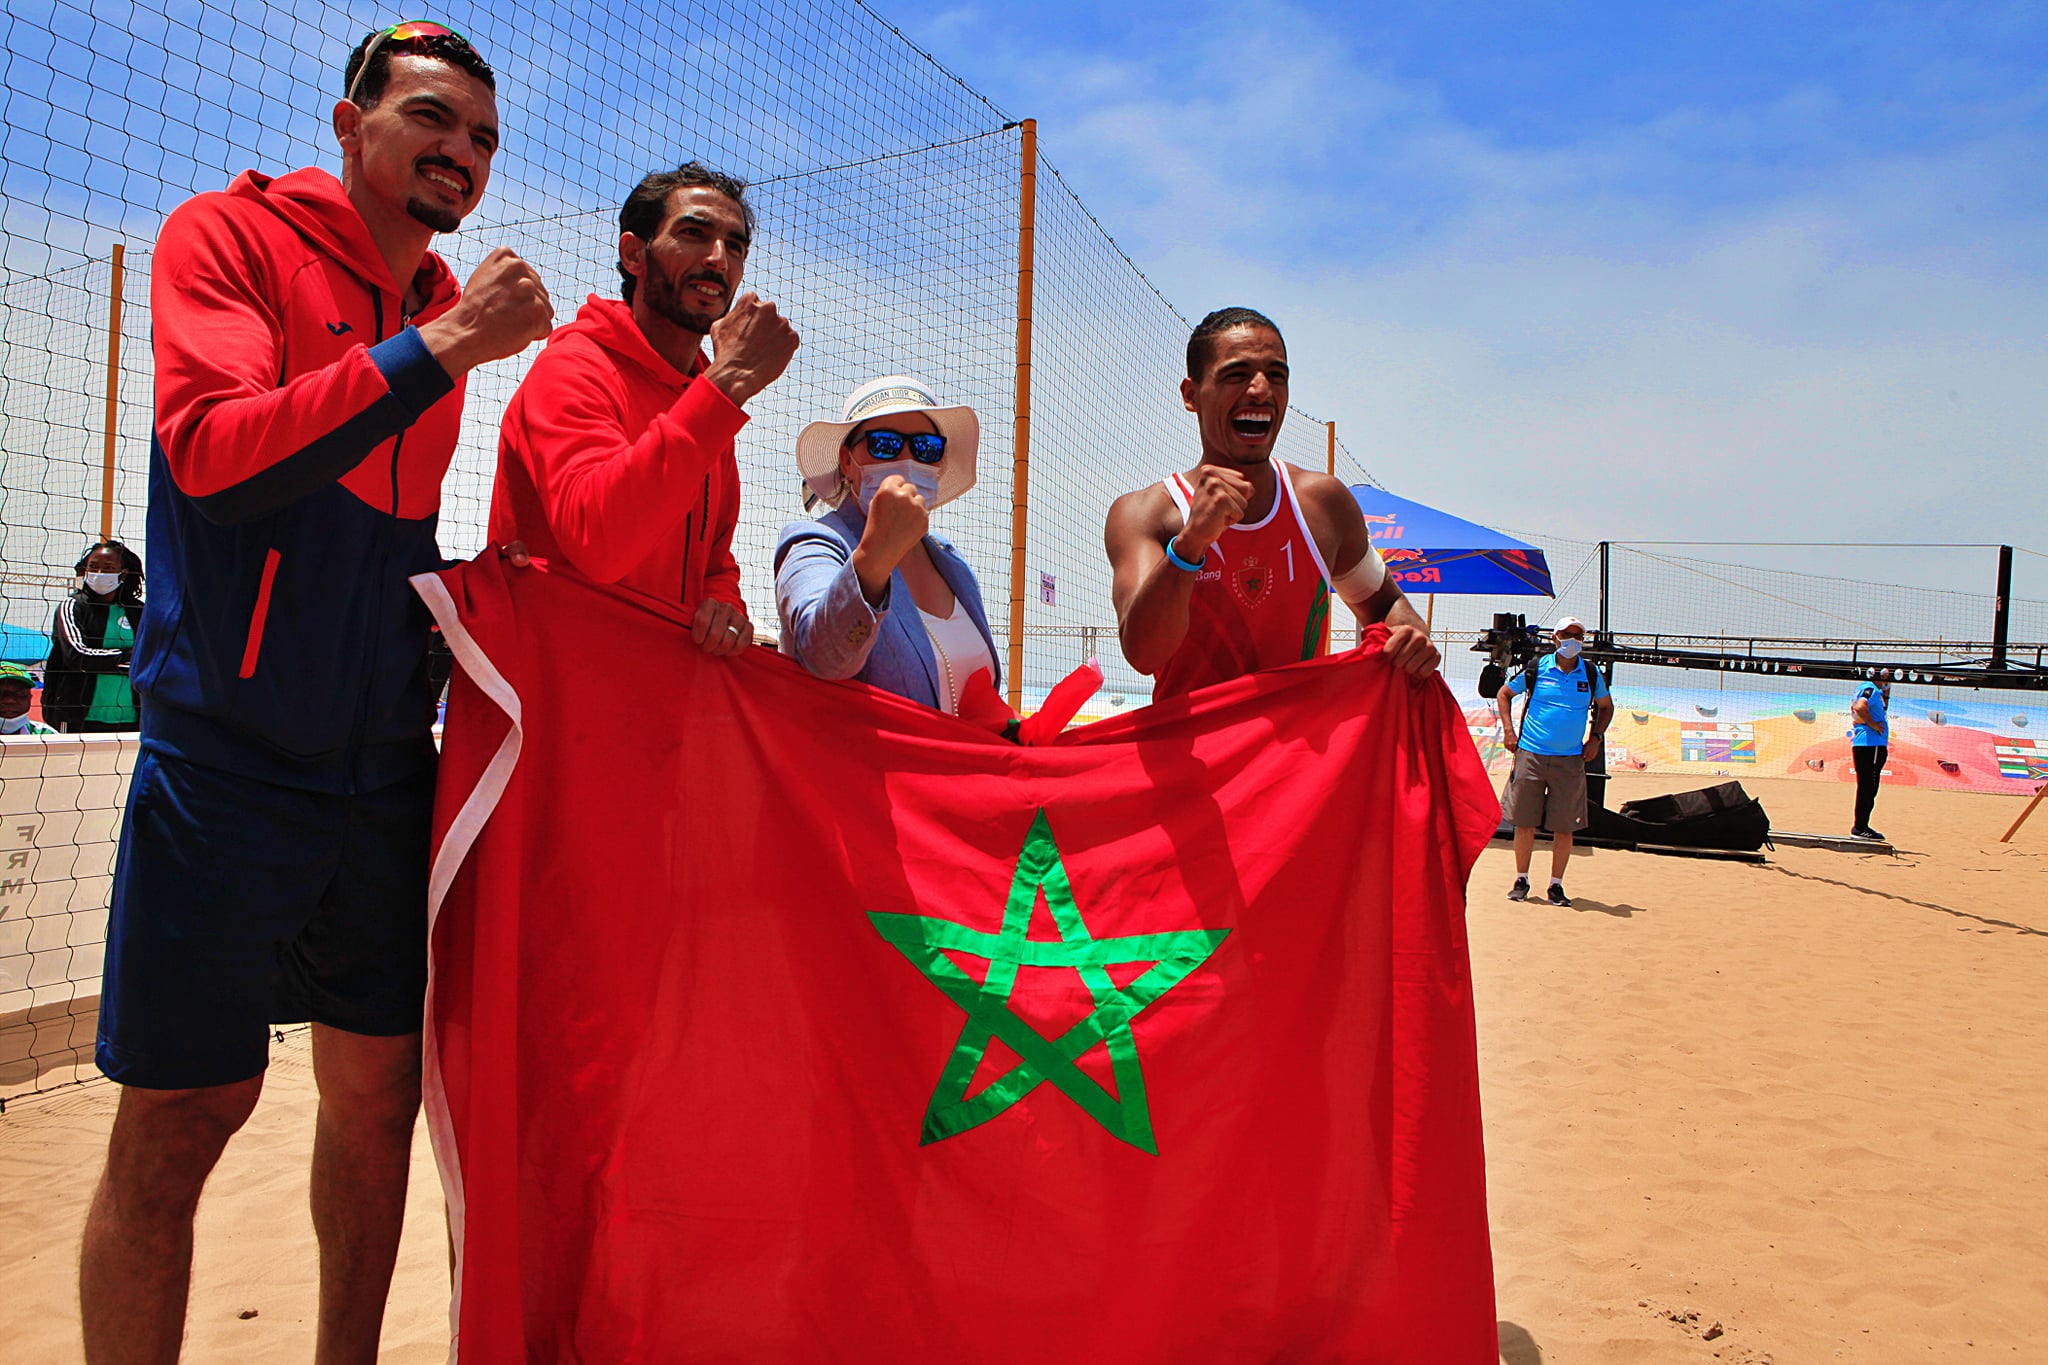 المنتخب المغربي للكرة الطائرة الشاطئية (ذكور) يتأهل إلى دورة الألعاب الأولمبية  طوكيو 2020 